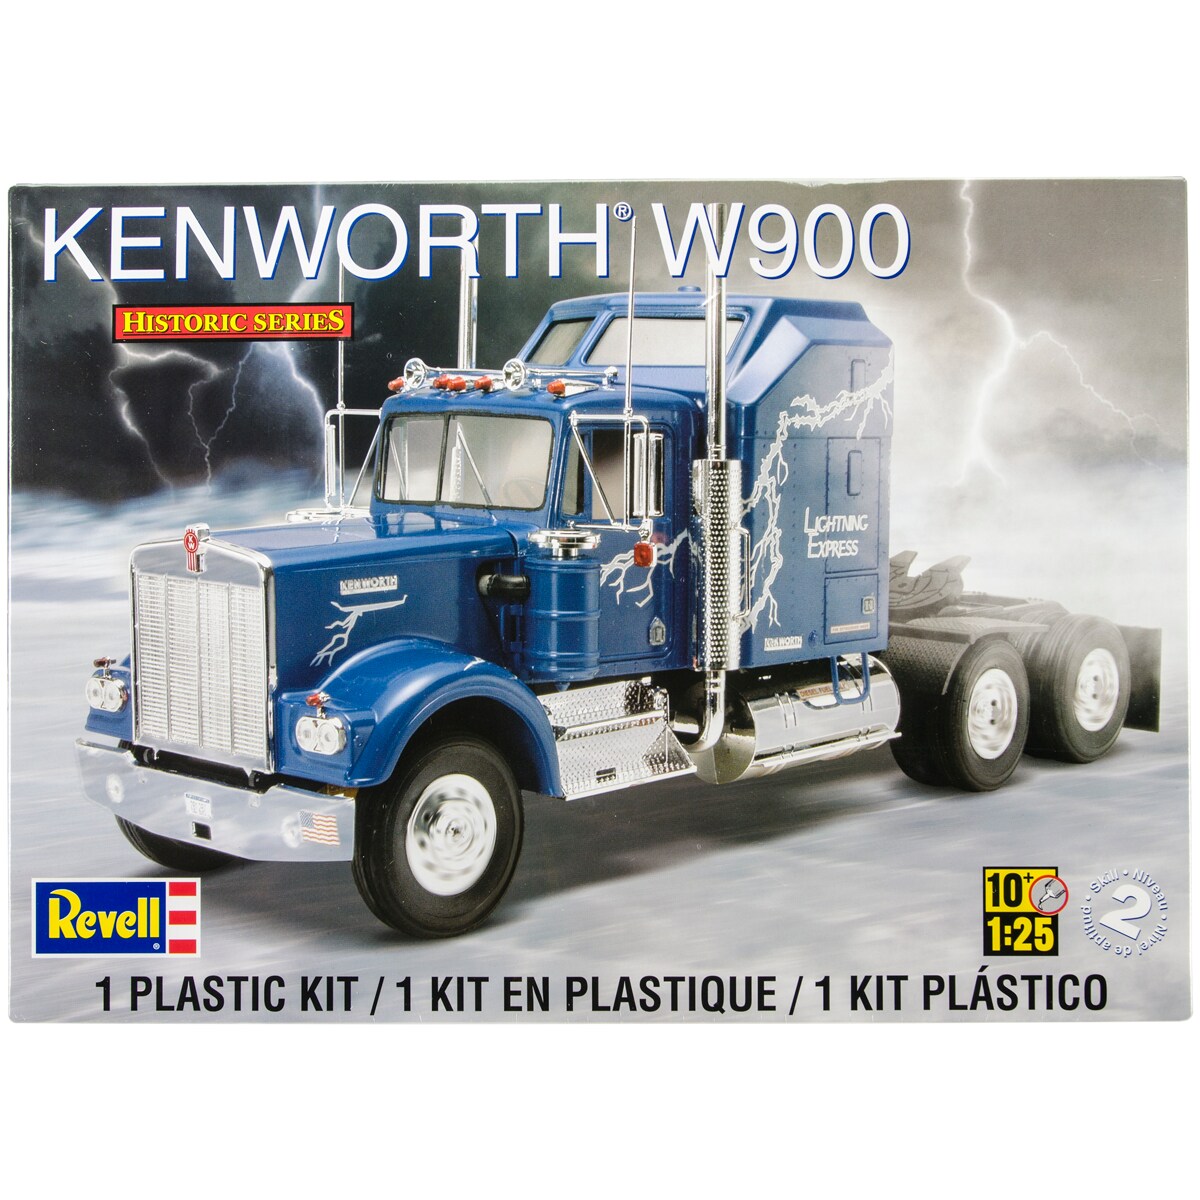 Revell Plastic Model Kit-Kenworth W900 1:25